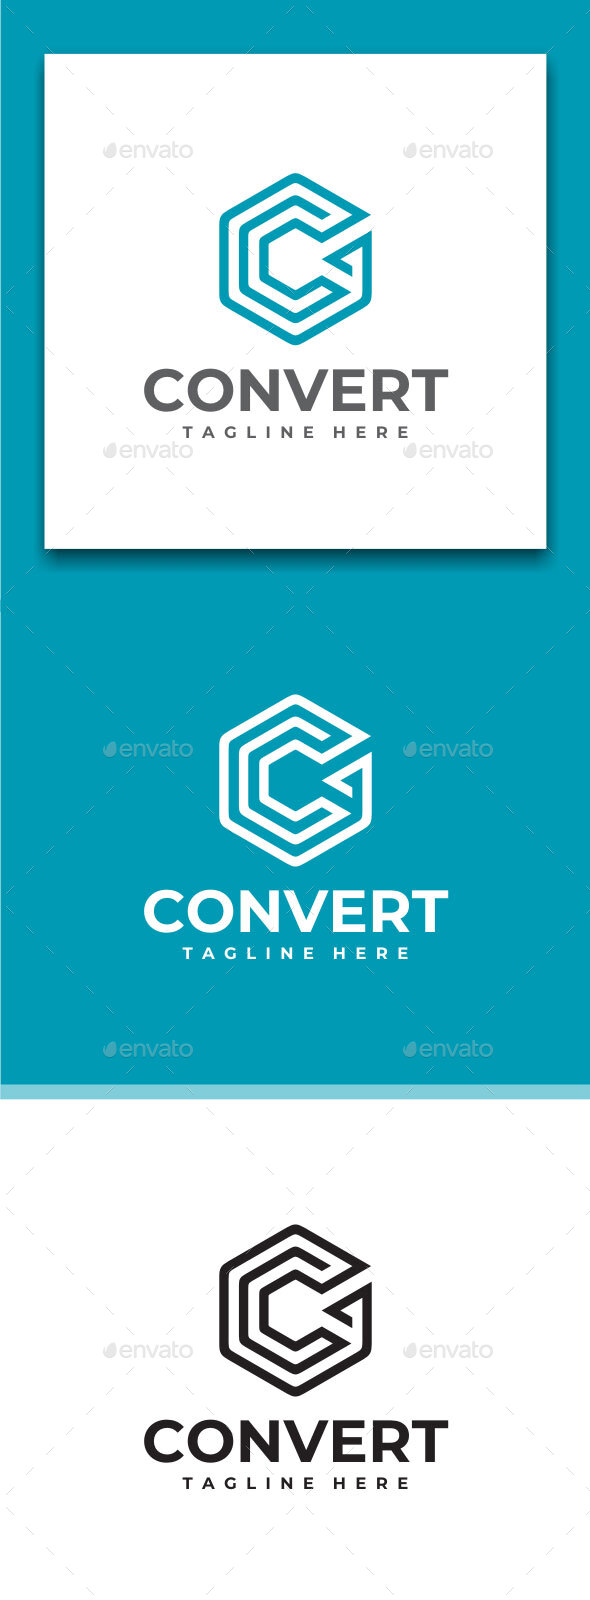 Convert - Letter C Logo Design